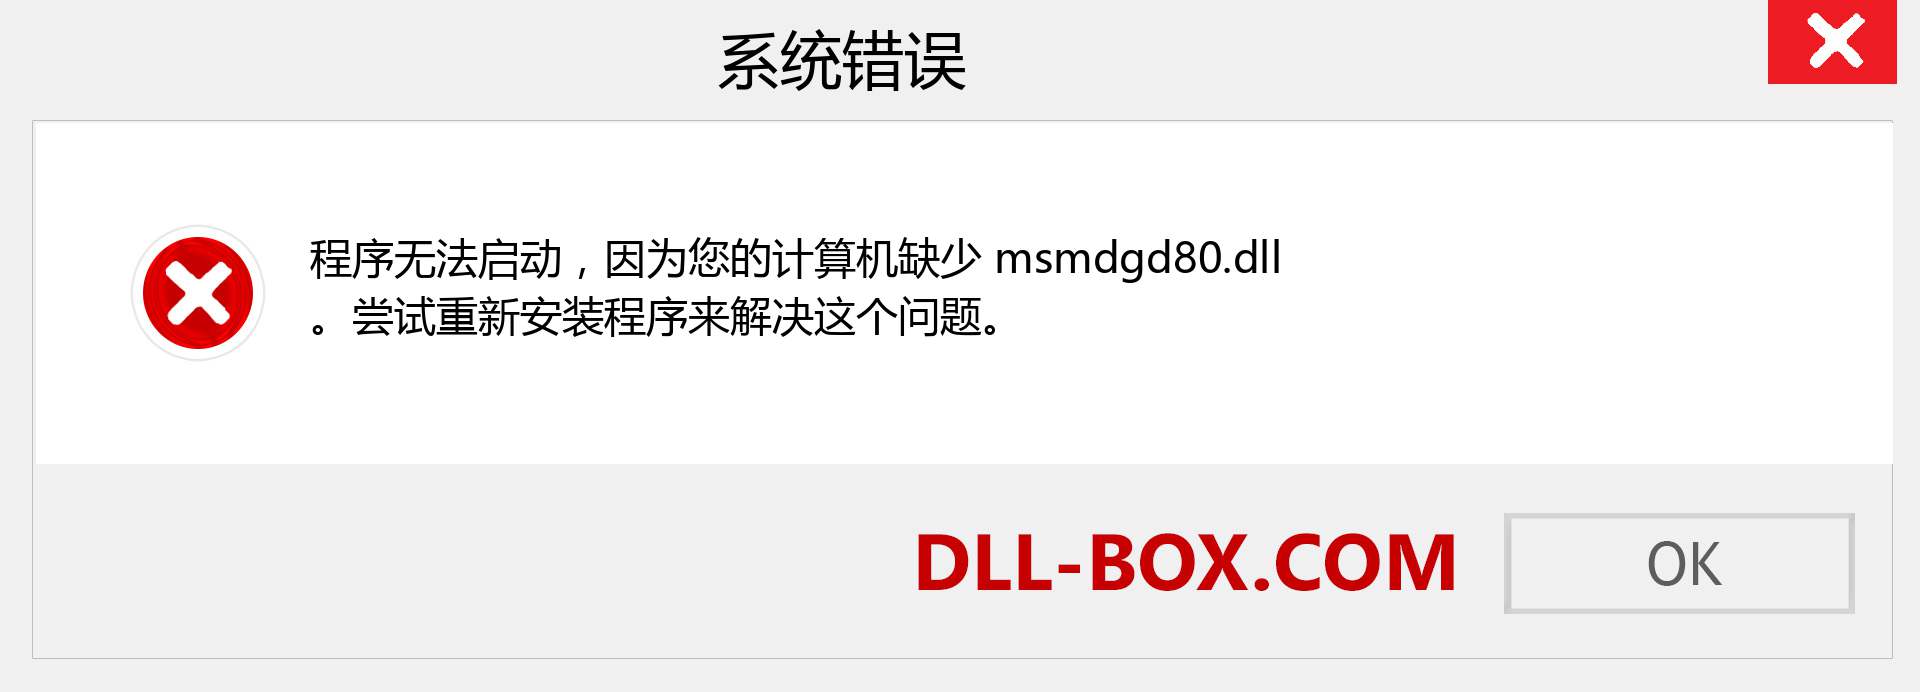 msmdgd80.dll 文件丢失？。 适用于 Windows 7、8、10 的下载 - 修复 Windows、照片、图像上的 msmdgd80 dll 丢失错误